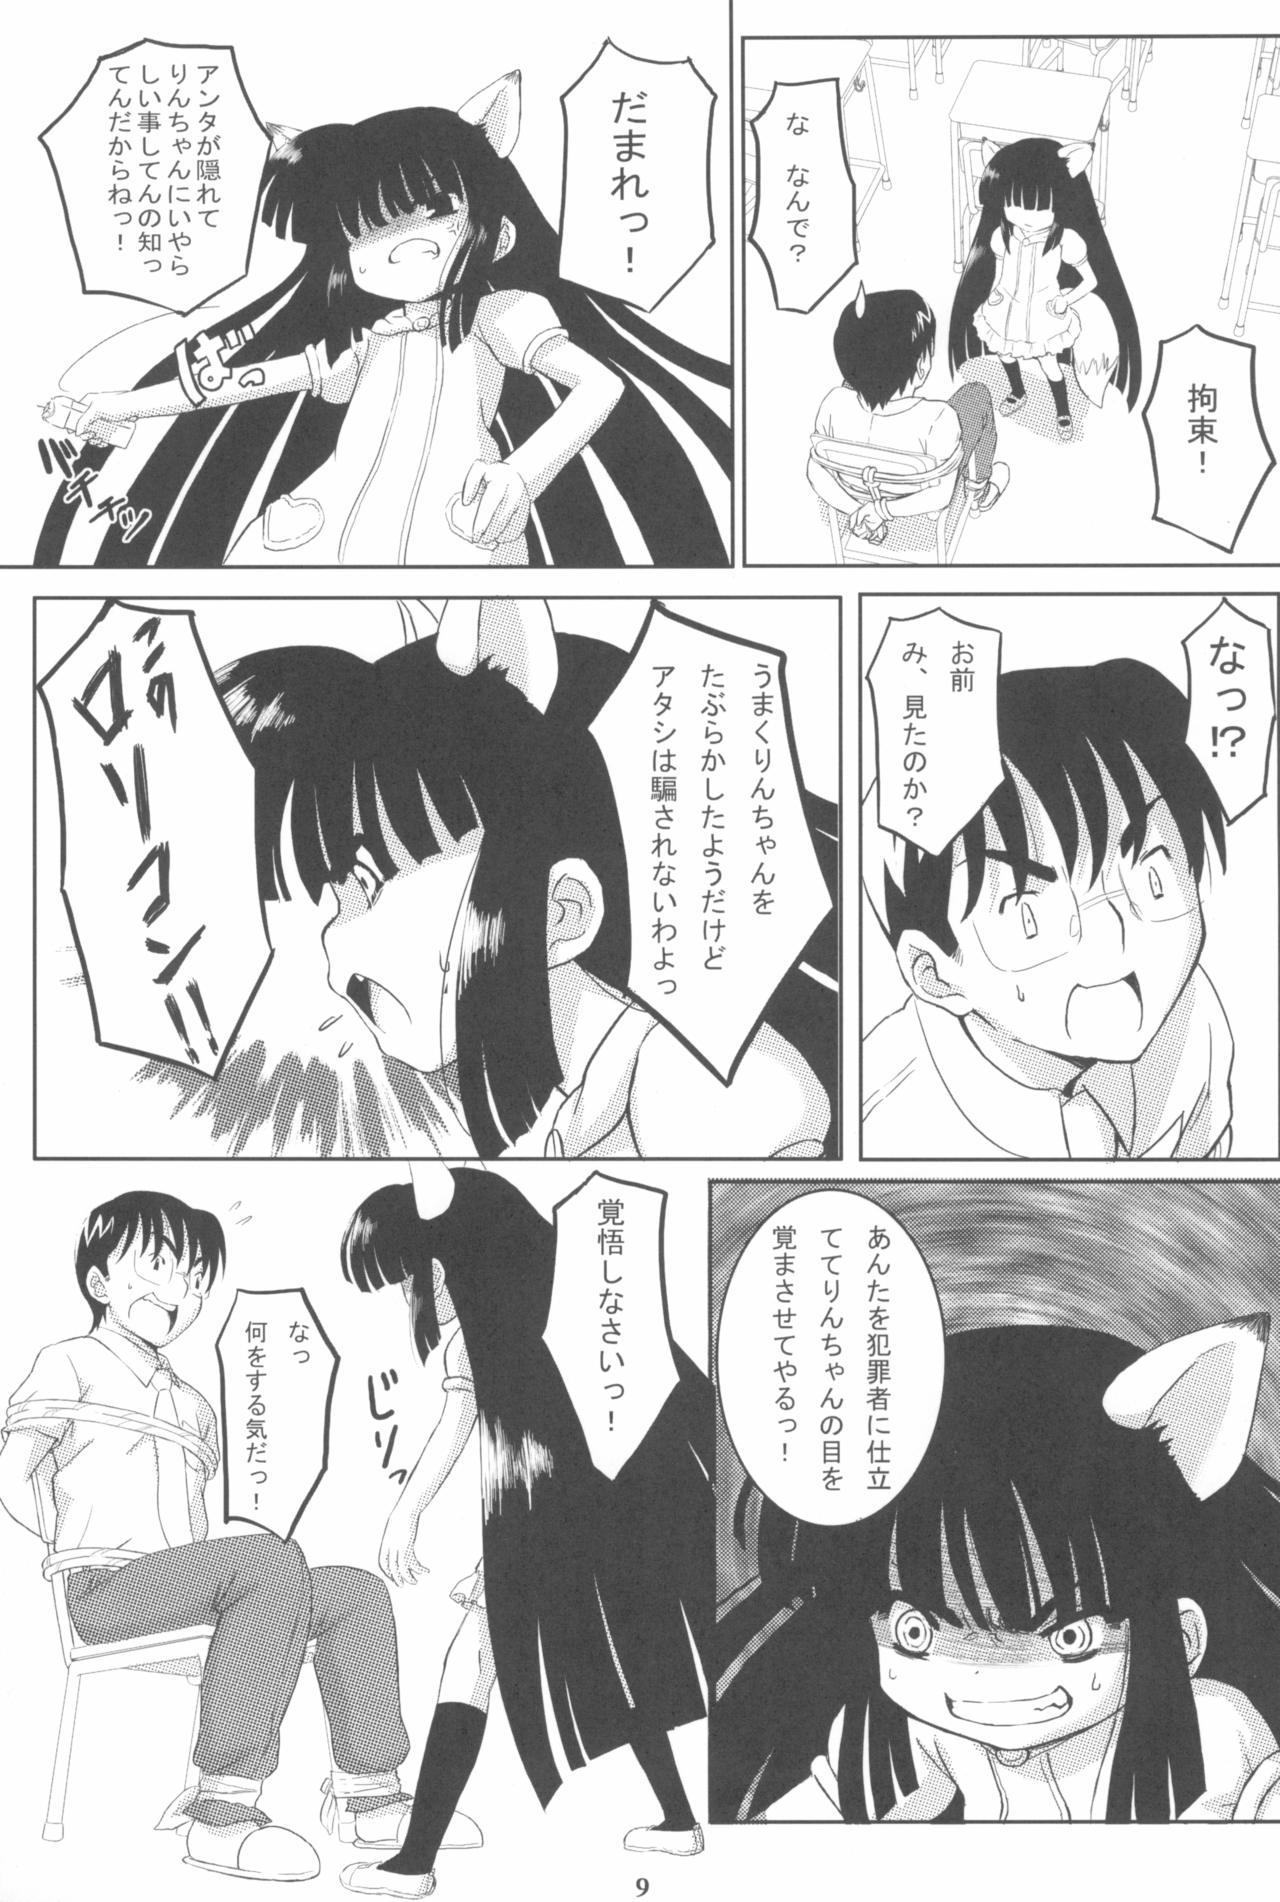 Hot Brunette Kuro Masterpiece War! - Kodomo no jikan Sensual - Page 9